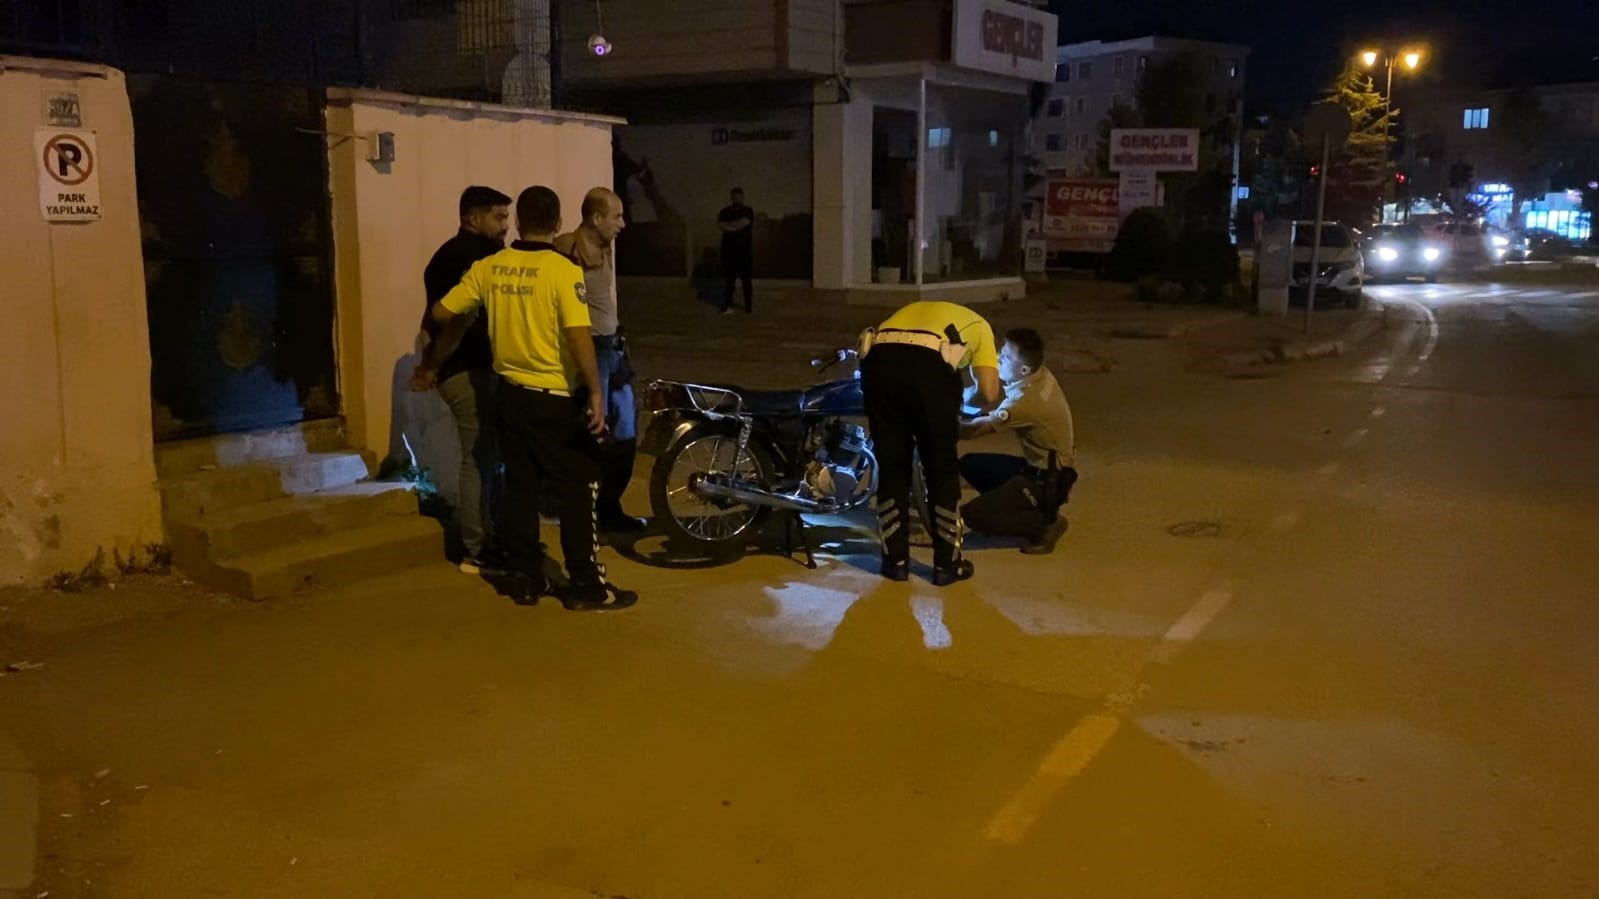 Genc Gazete Kacan Motosiklet Polis (4)